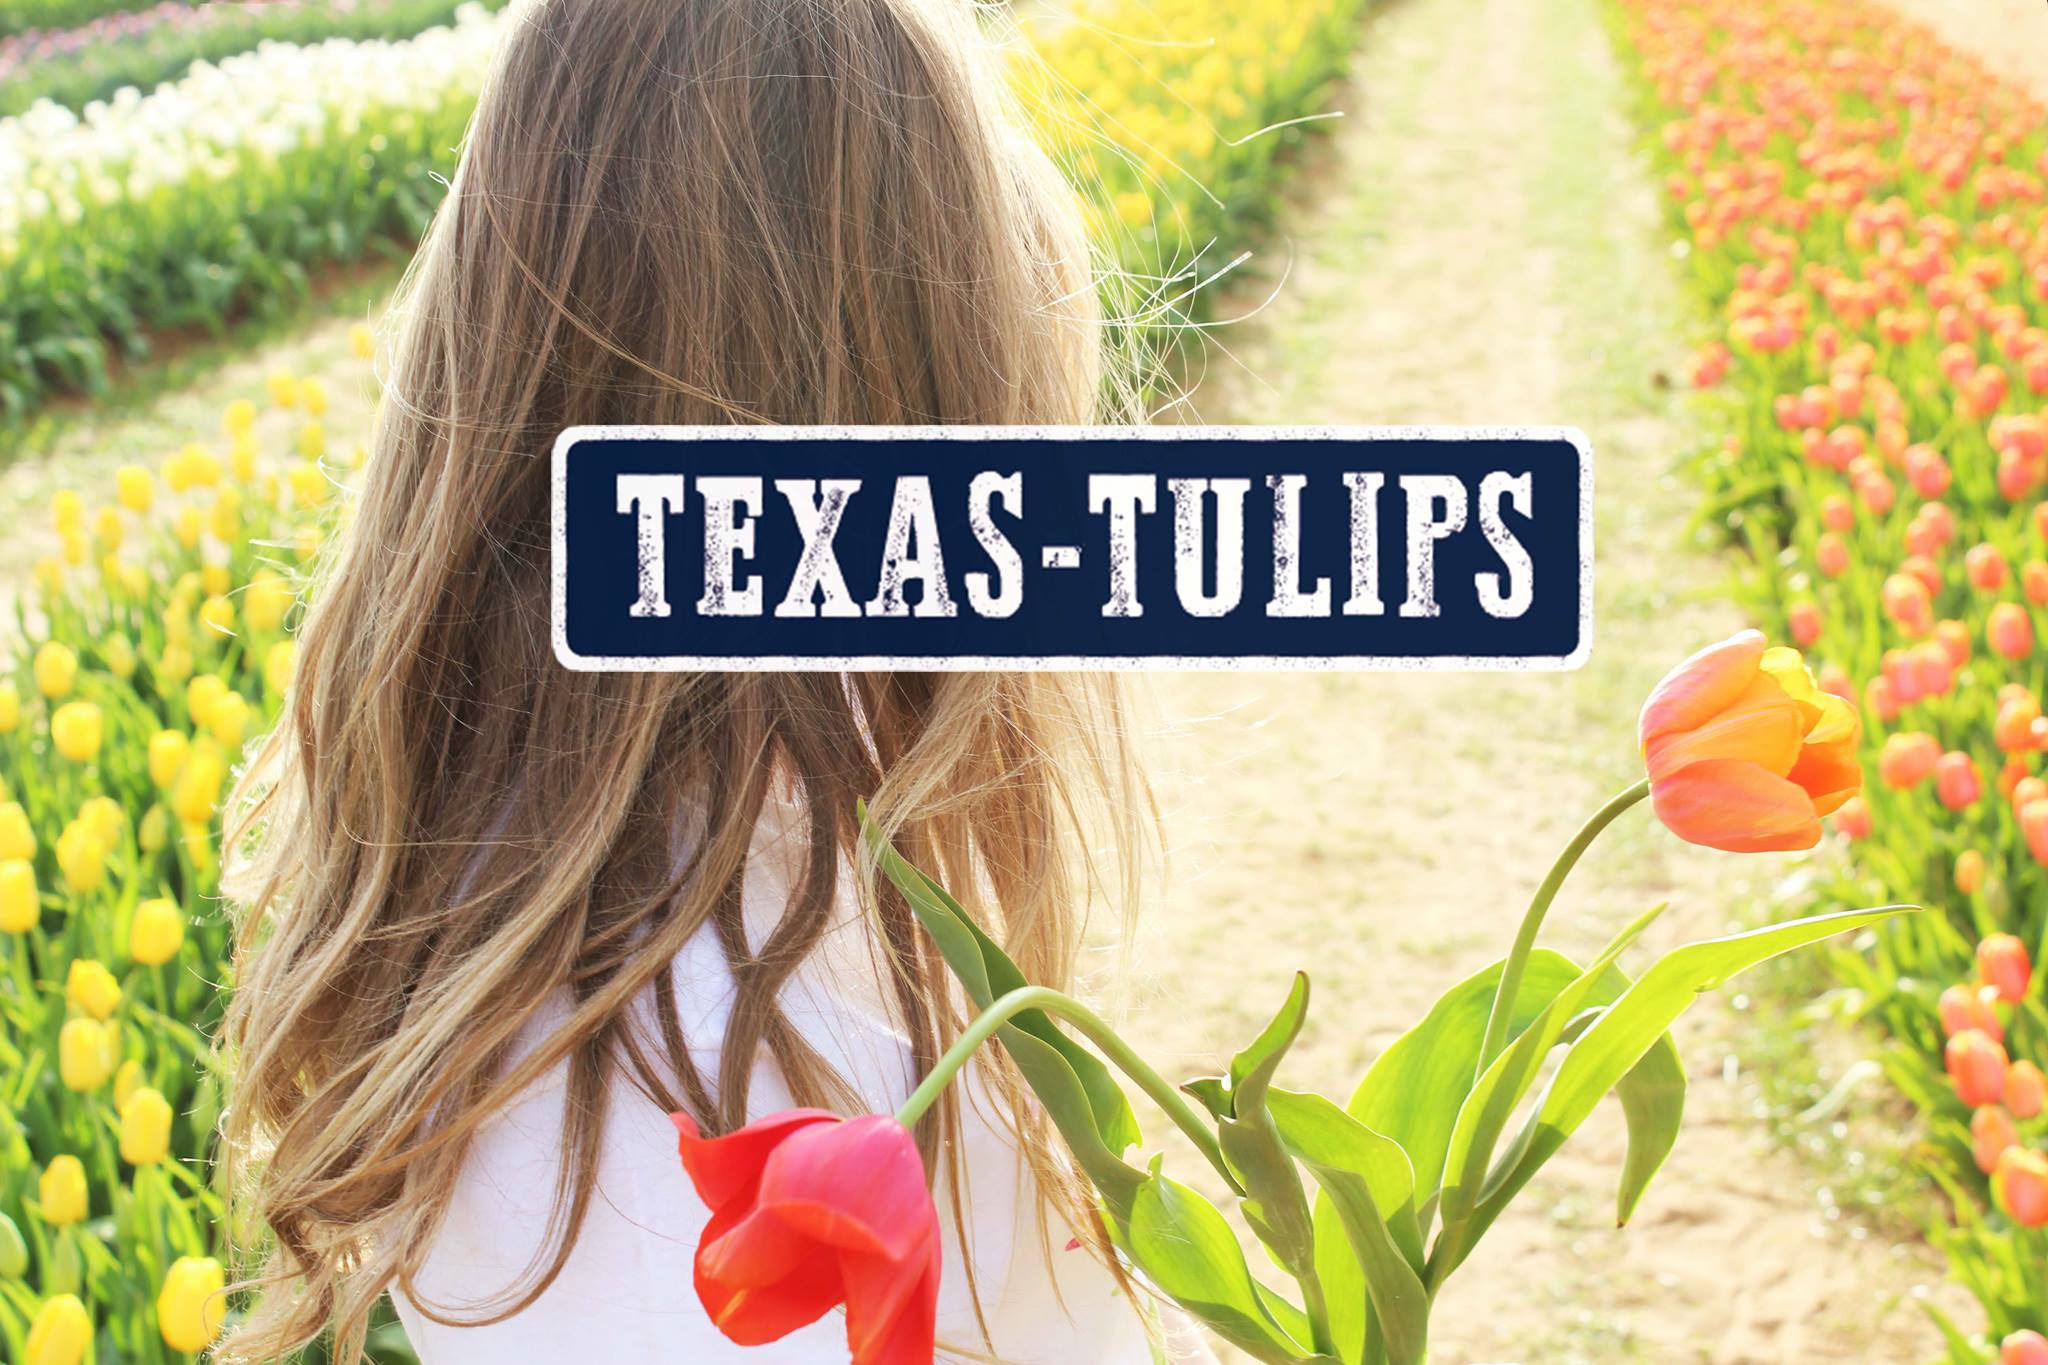 Texas-Tulips LLC